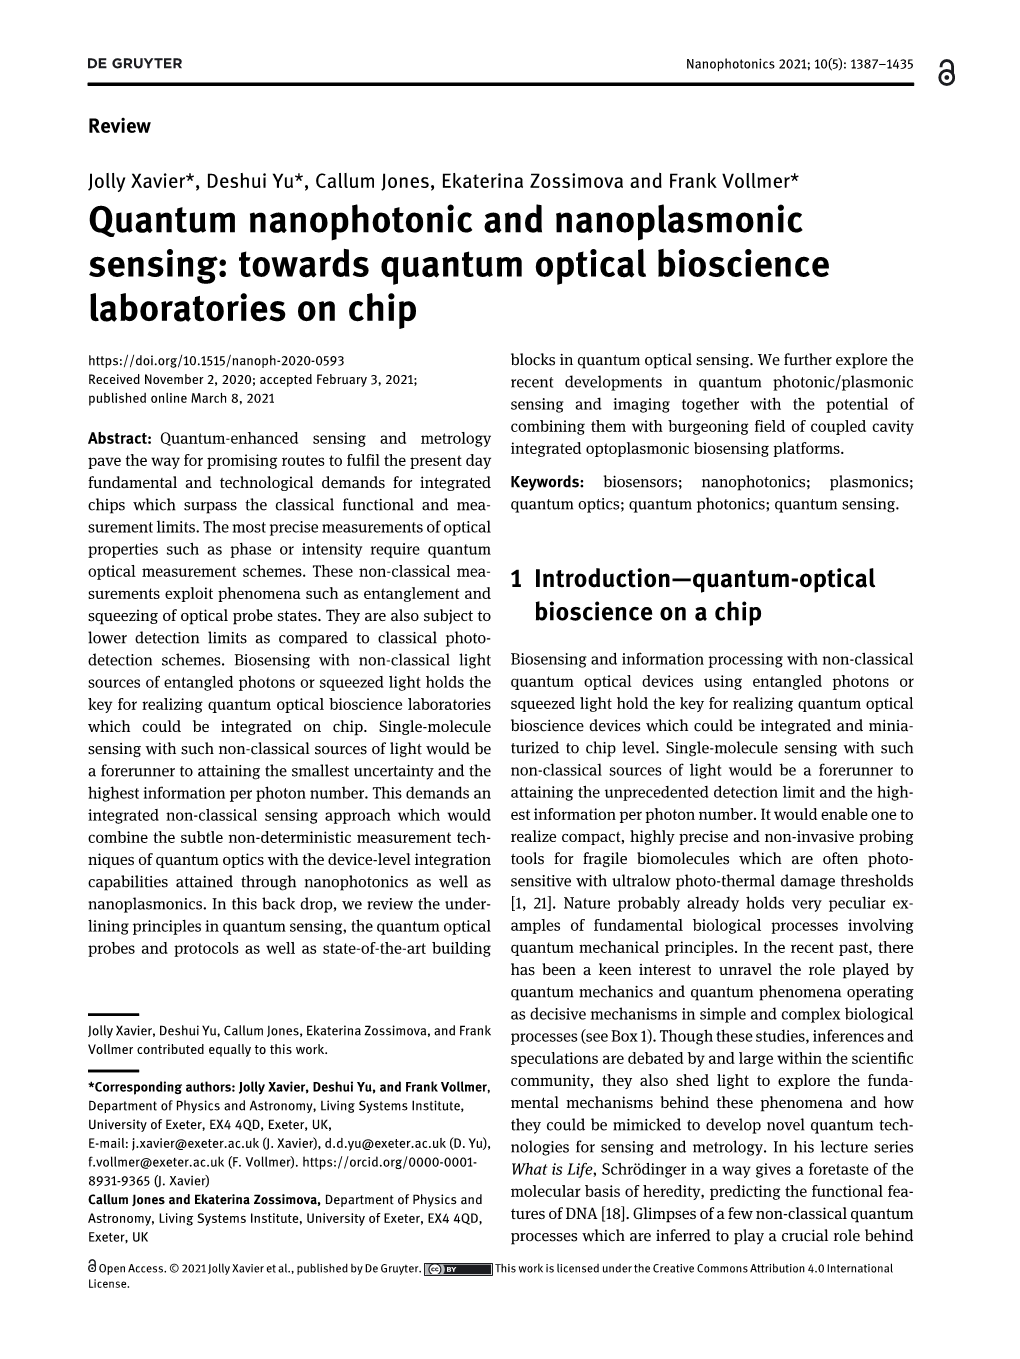 Towards Quantum Optical Bioscience Laboratories on Chip Blocks in Quantum Optical Sensing